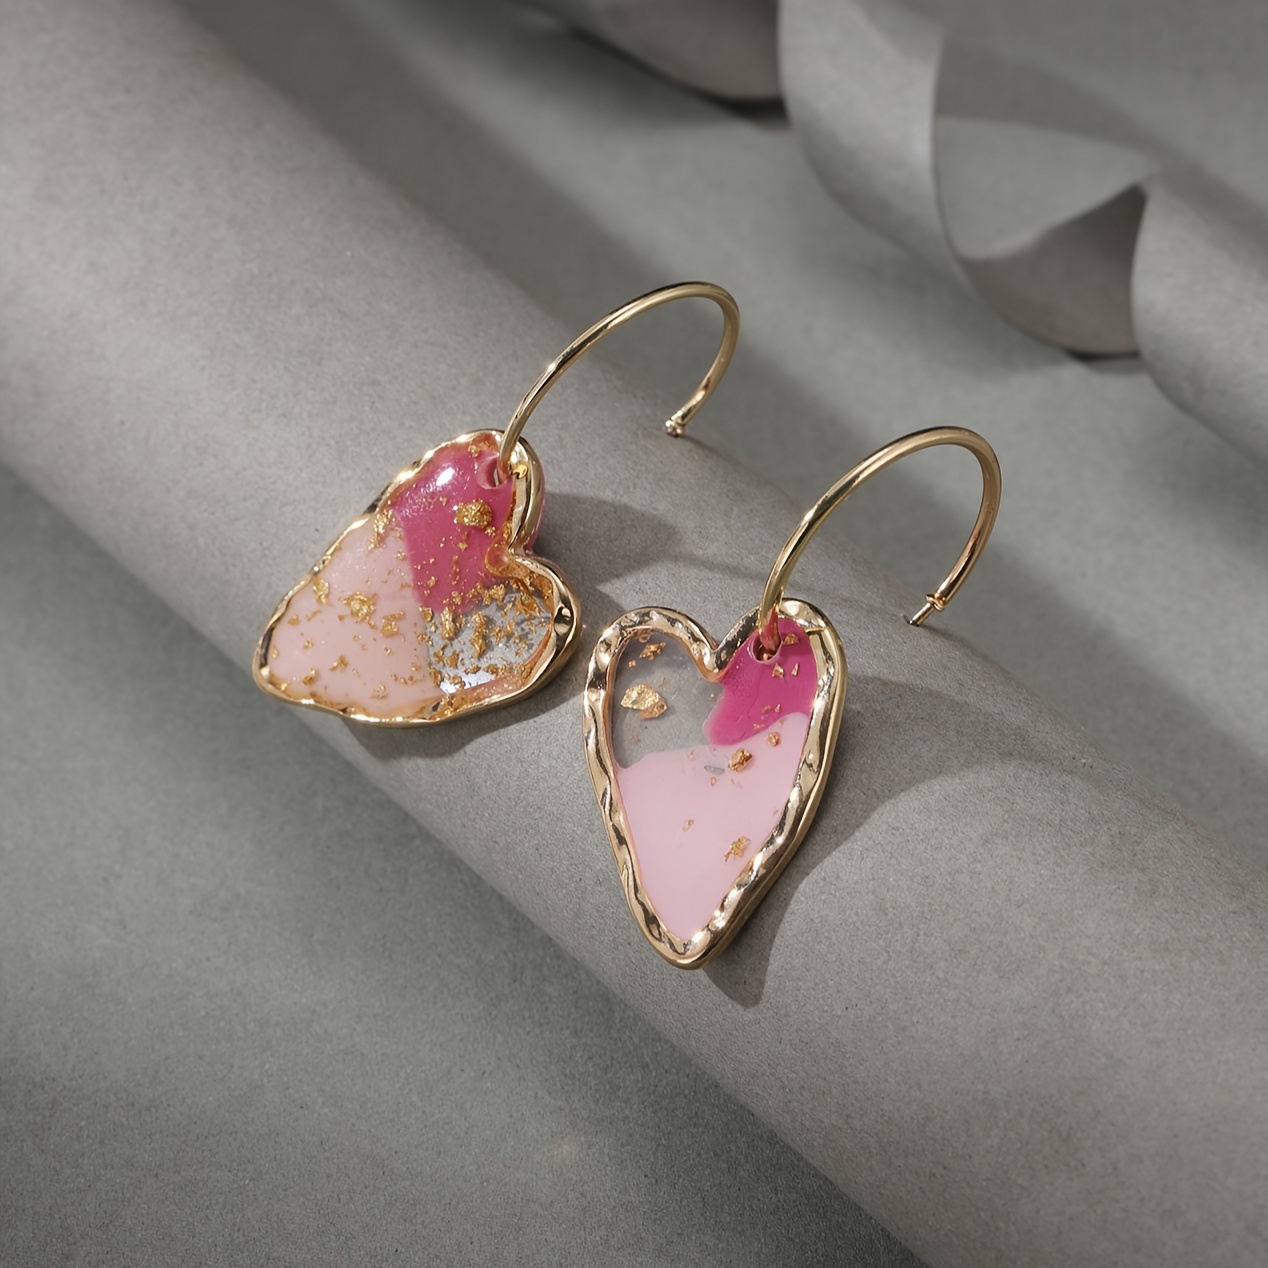 

Resin Love Heart Pendant Hoop Earrings, 18k Gold Plated Ear Jewelry, Sweet Style Earrings For Women Valentine's Day Gifts